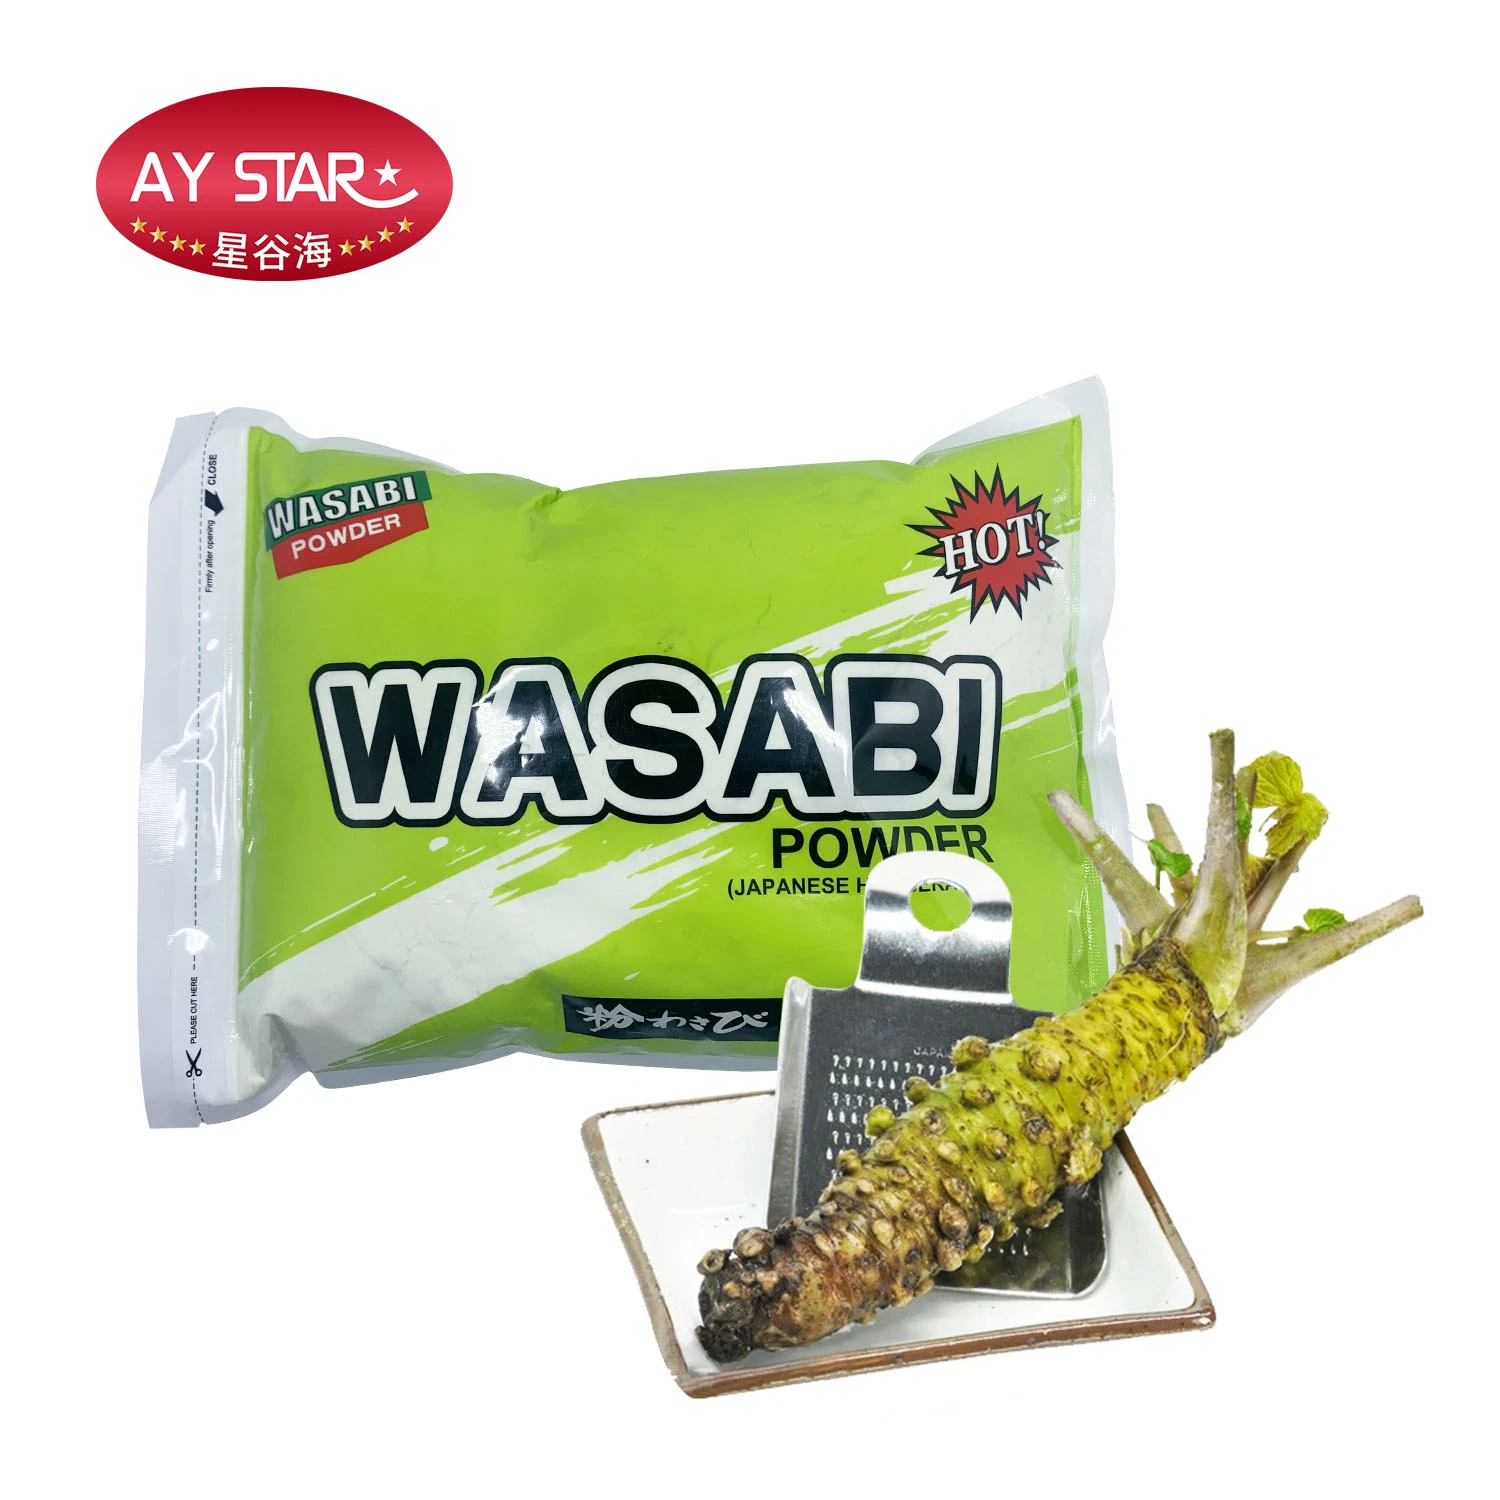 Comida ODM OEM Tempero Wasabi puro granulado de Pó de raiz forte seca